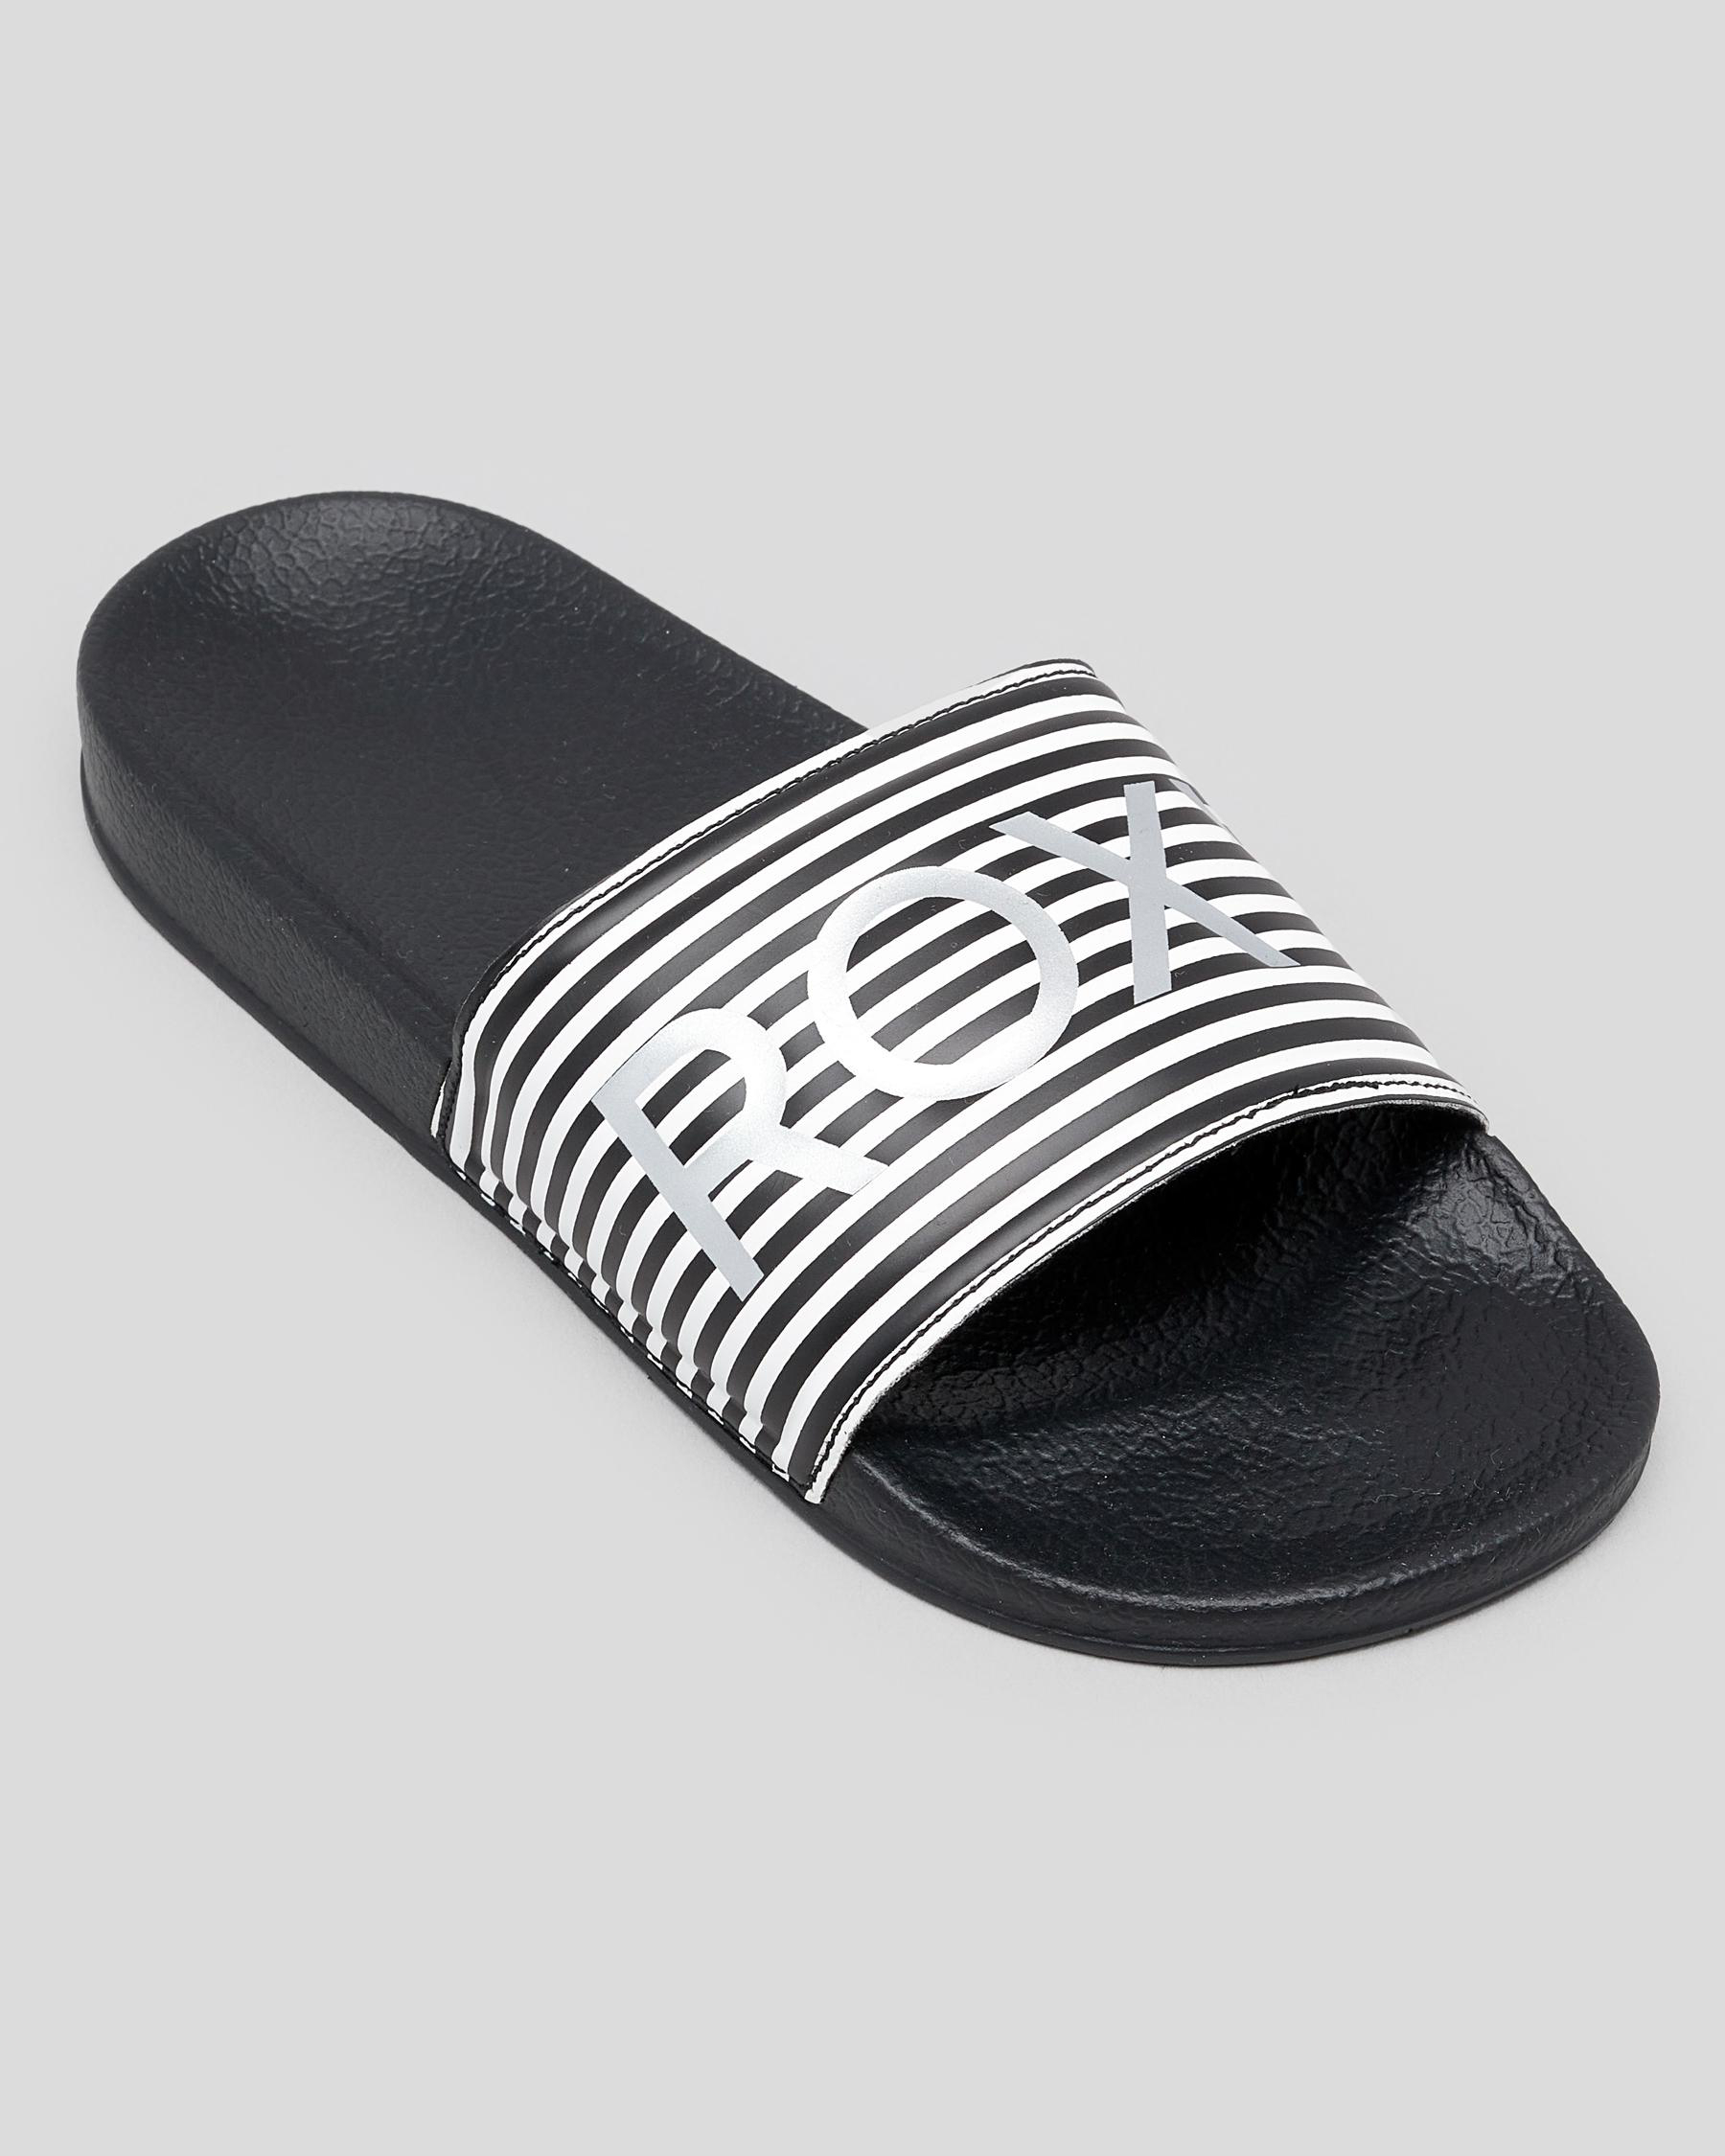 Roxy Girls' Slippy Slide Sandals In Black/white - Fast Shipping & Easy ...